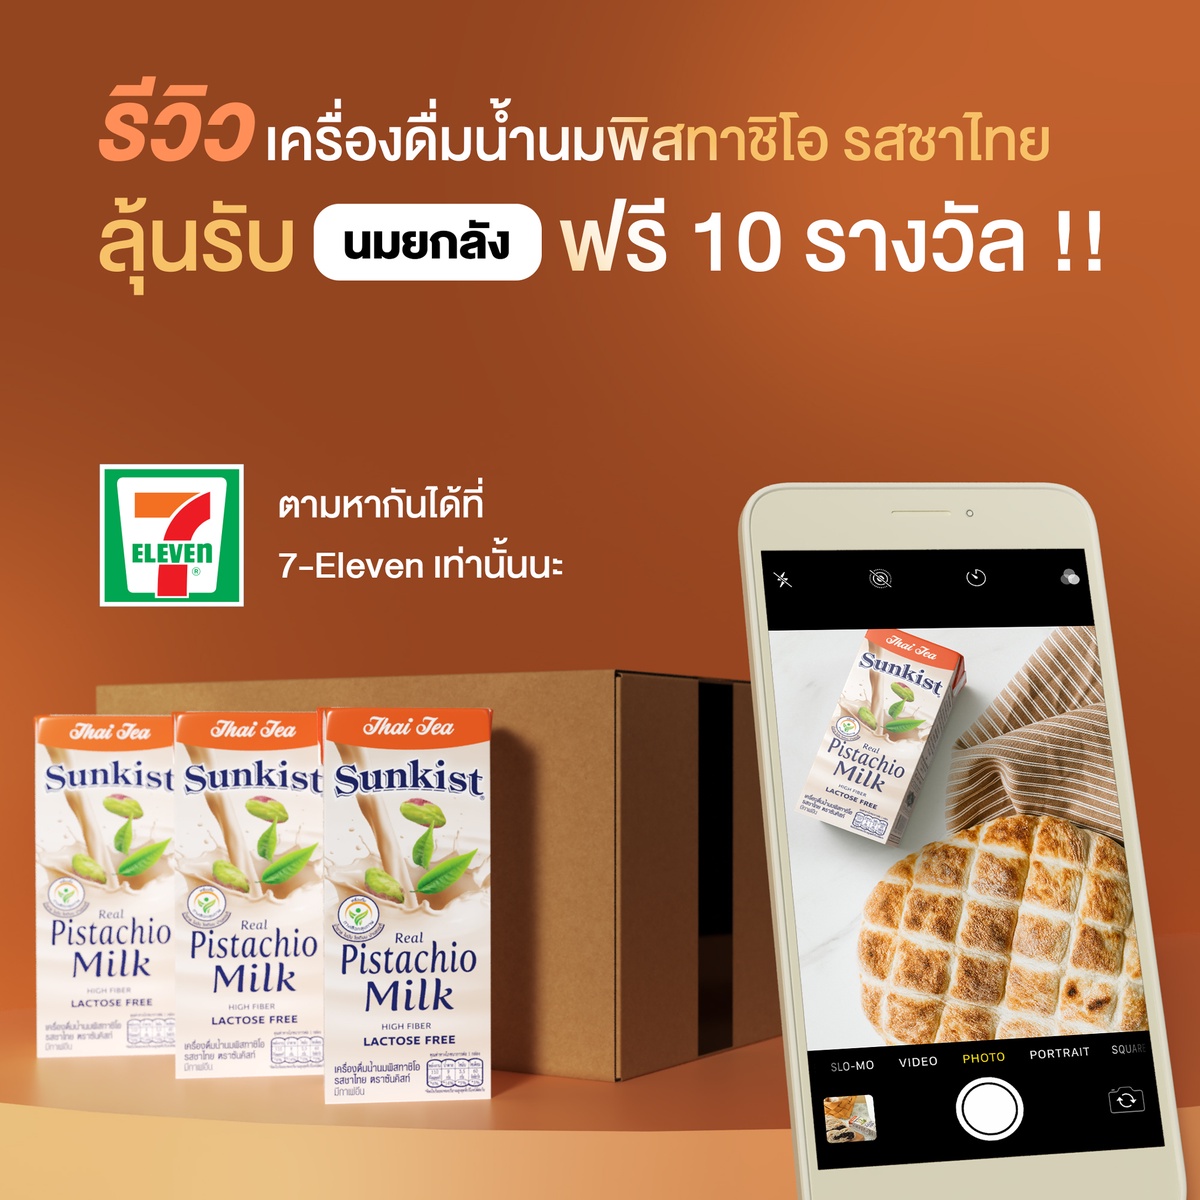 ซันคิสท์ชวนร่วมสนุกในกิจกรรมออนไลน์ ลุ้นรับนมพิสทาชิโอรสชาติใหม่ ชาไทย จำนวน 10 รางวัล